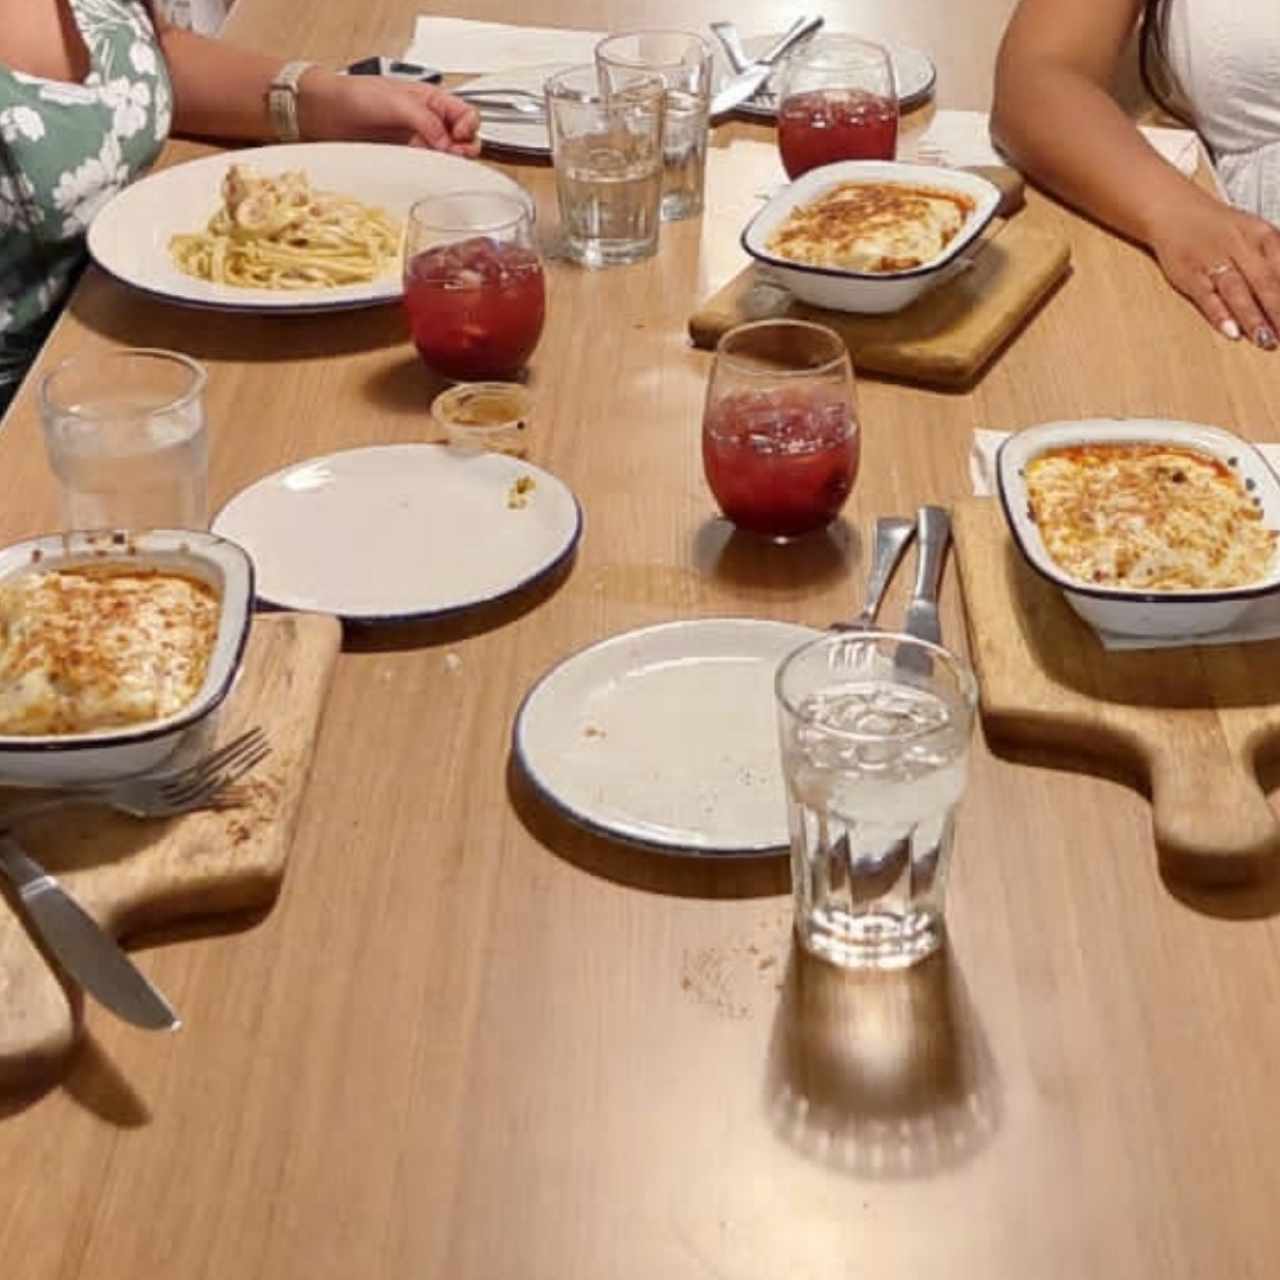 Pastas - Lasagna Bolognesa y Pasta co. Camarones, sangría 